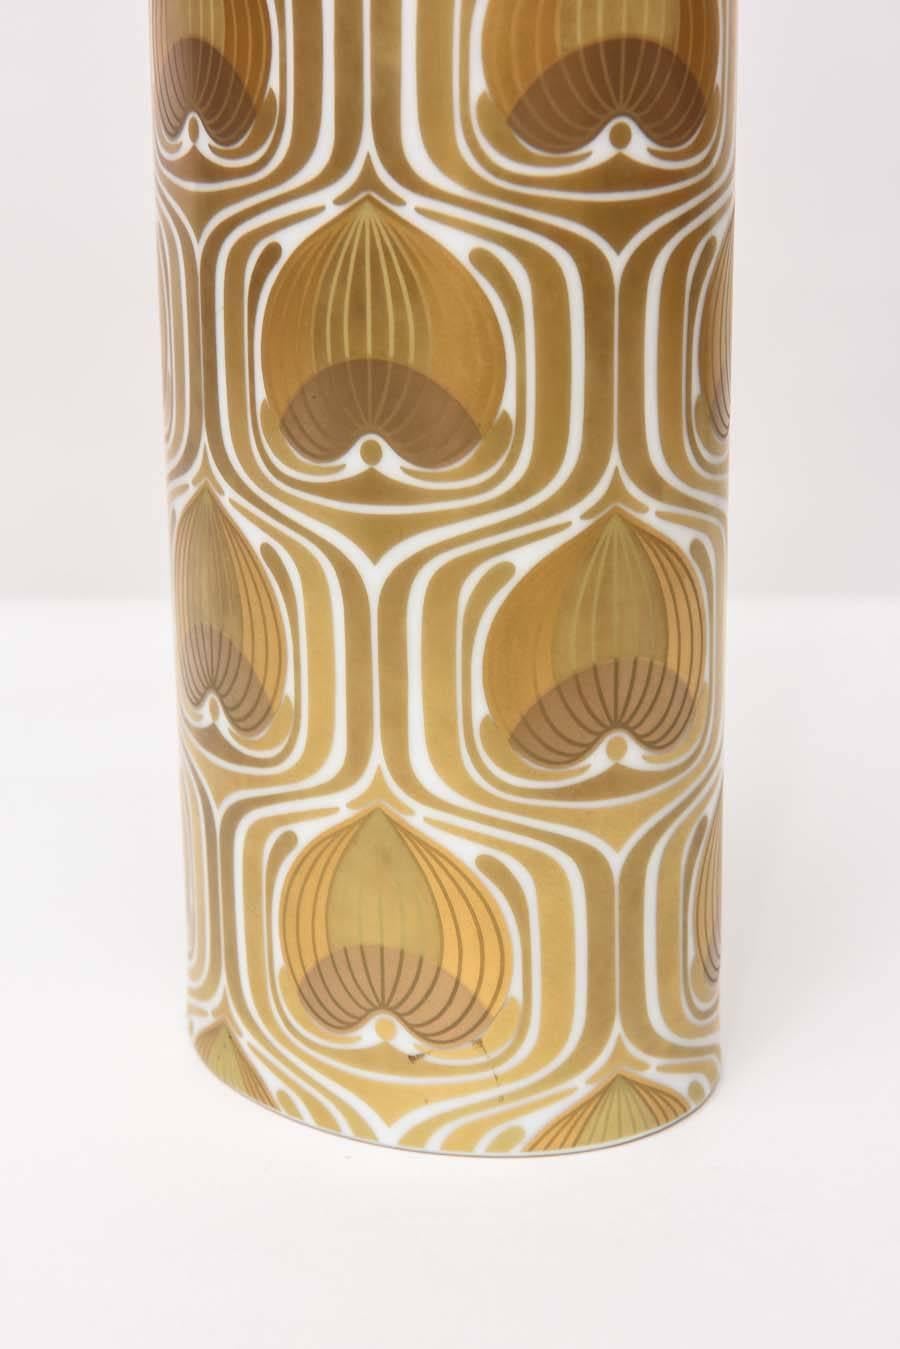 German 1970s Porcelain Cylinder Vase by Bjorn Wiinblad for Rosenthal